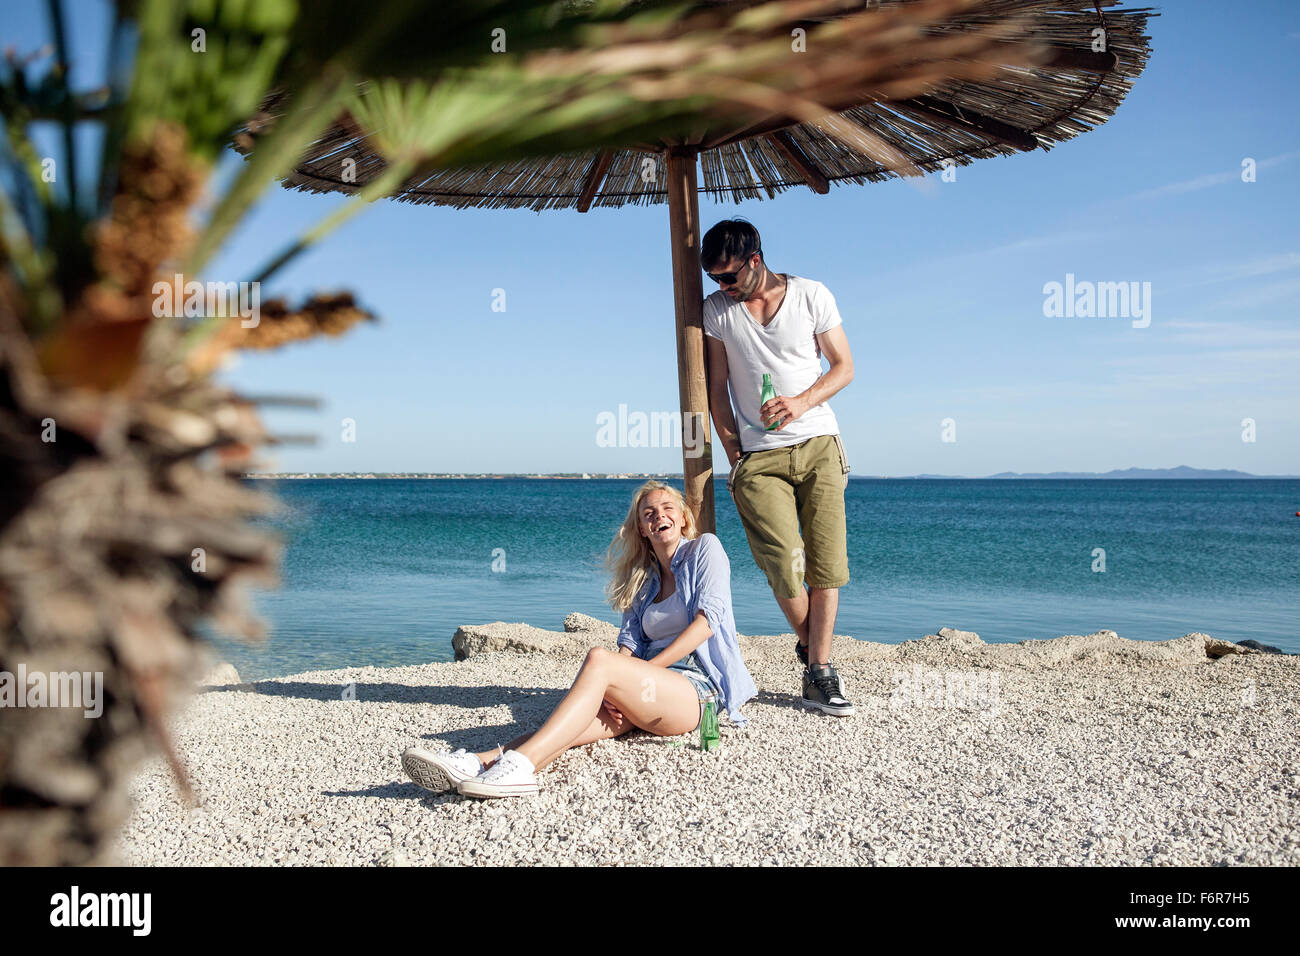 Giovane uomo versando acqua sulla ragazza sulla spiaggia Foto Stock